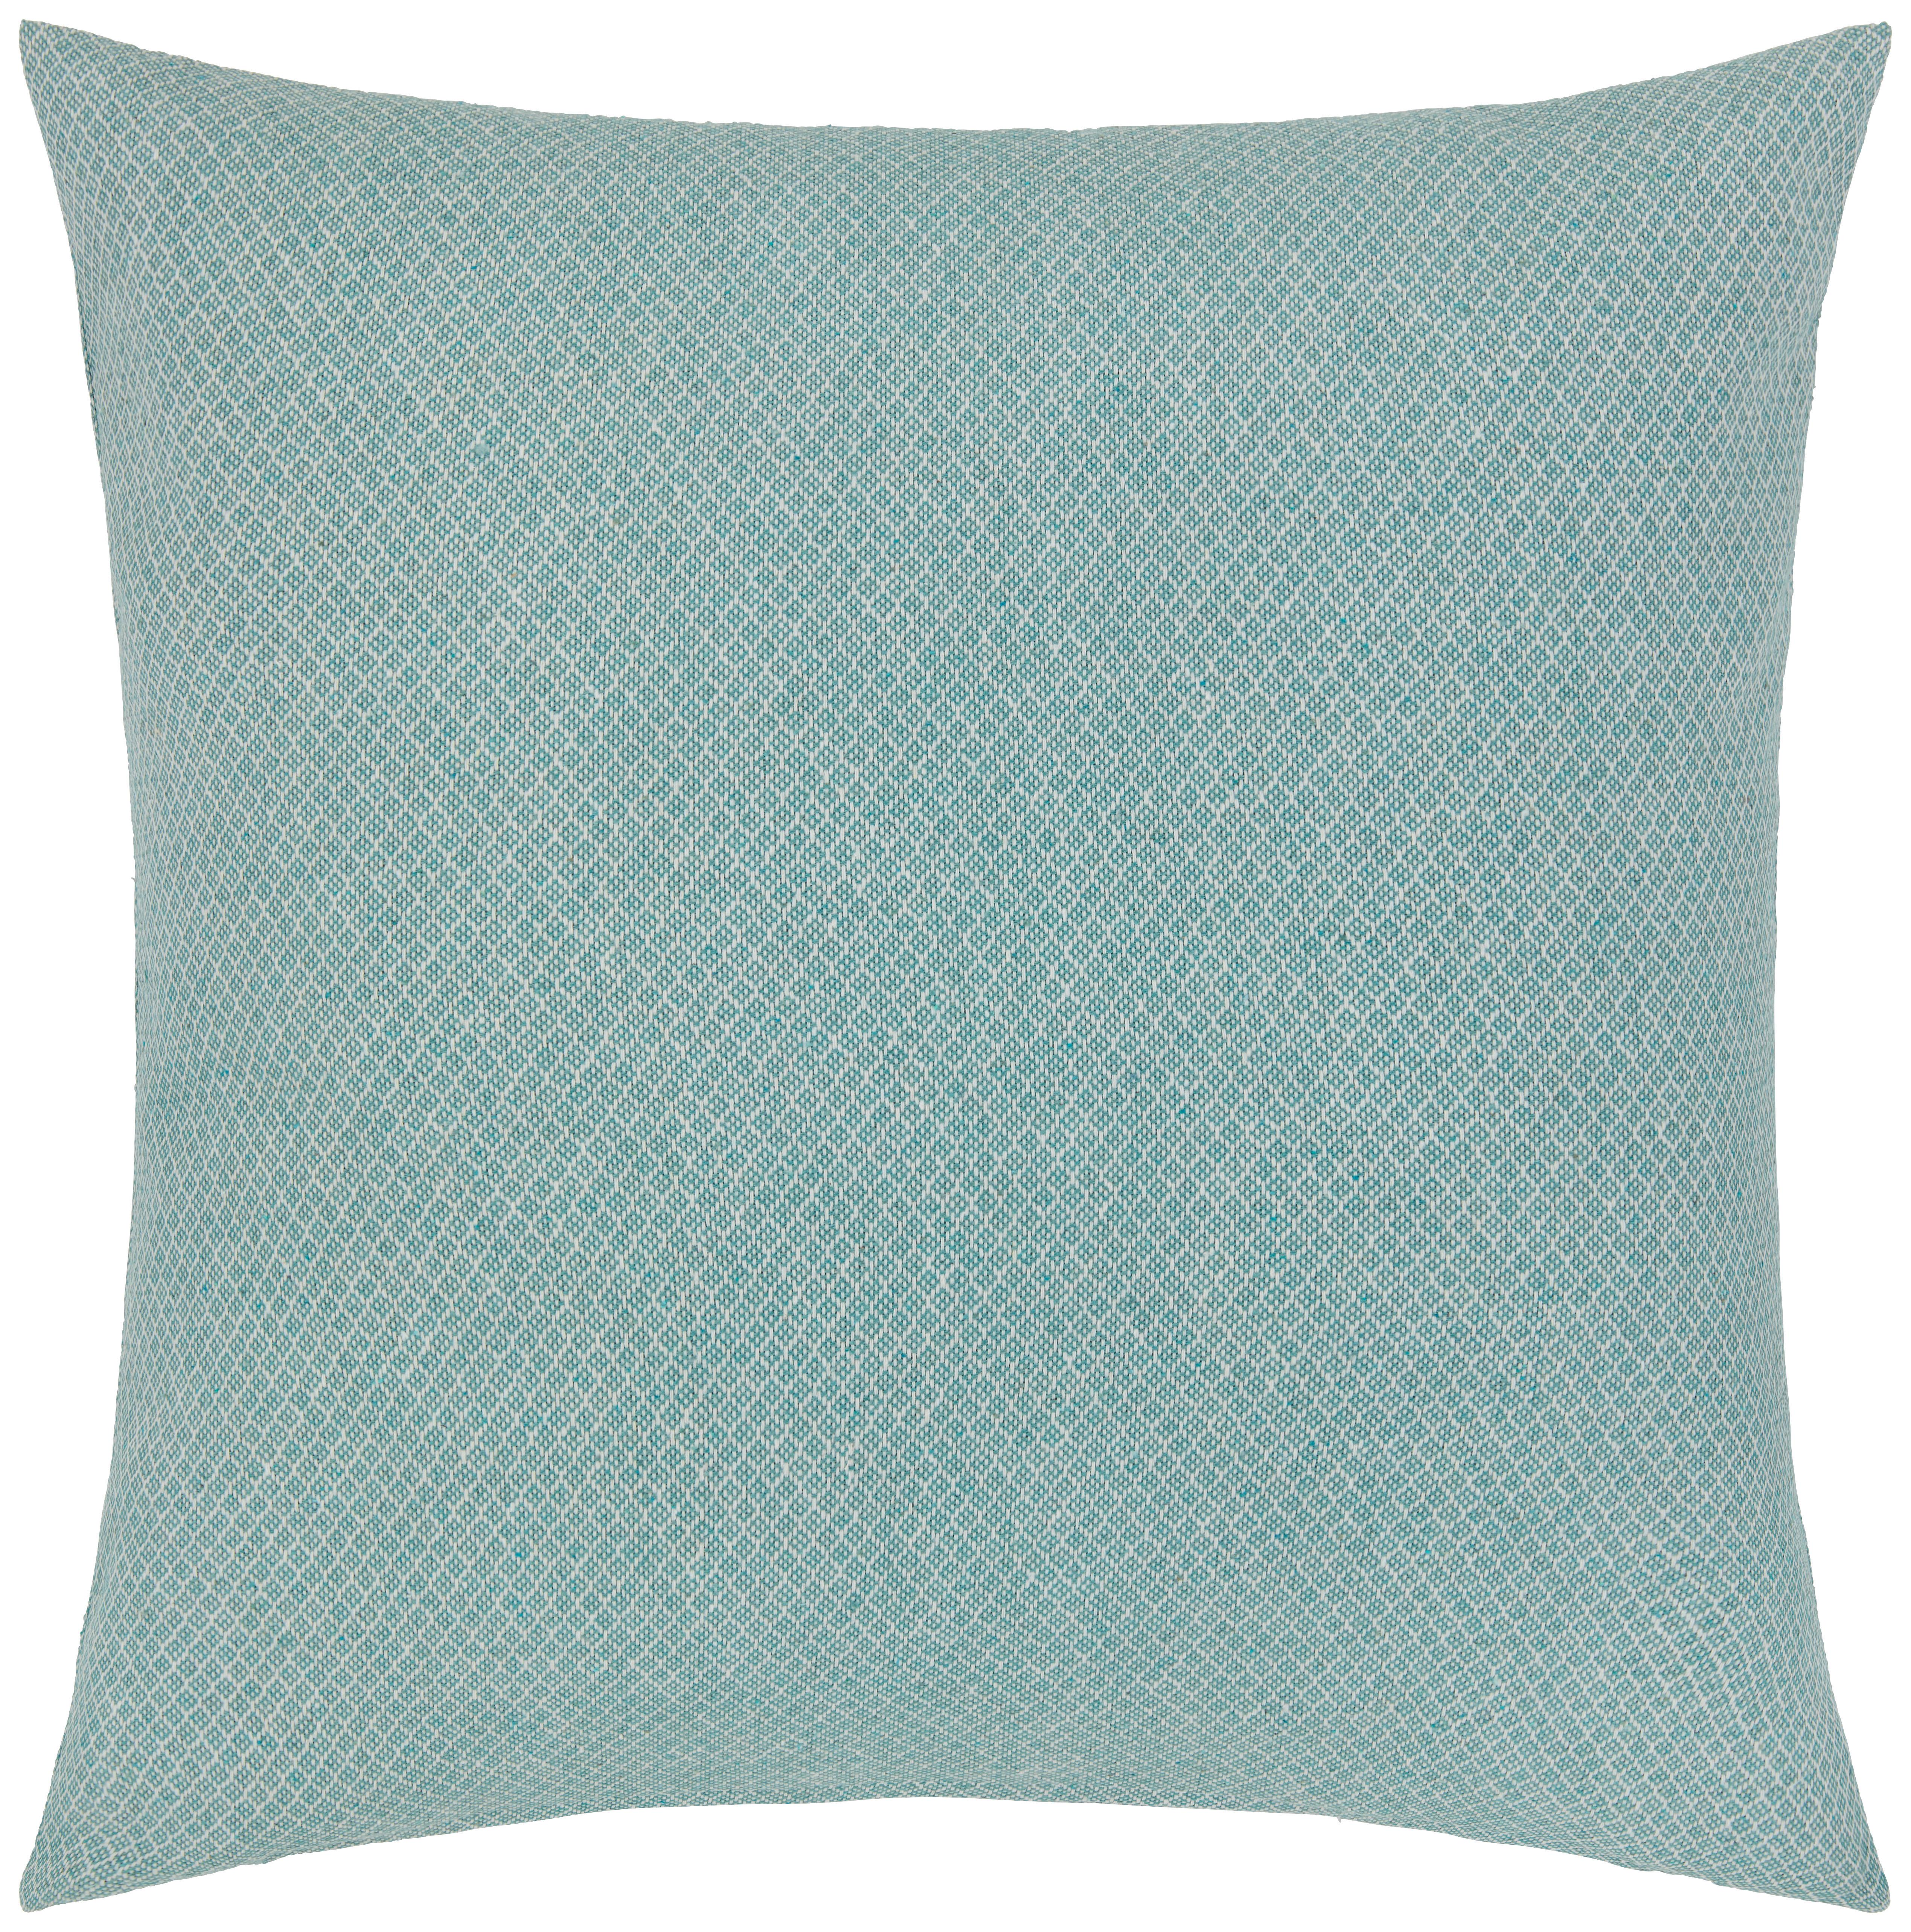 Zierkissen Dobby Uni in Blau/Weiß ca. 45x45cm - Blau/Weiss, Textil (45/45cm) - Premium Living